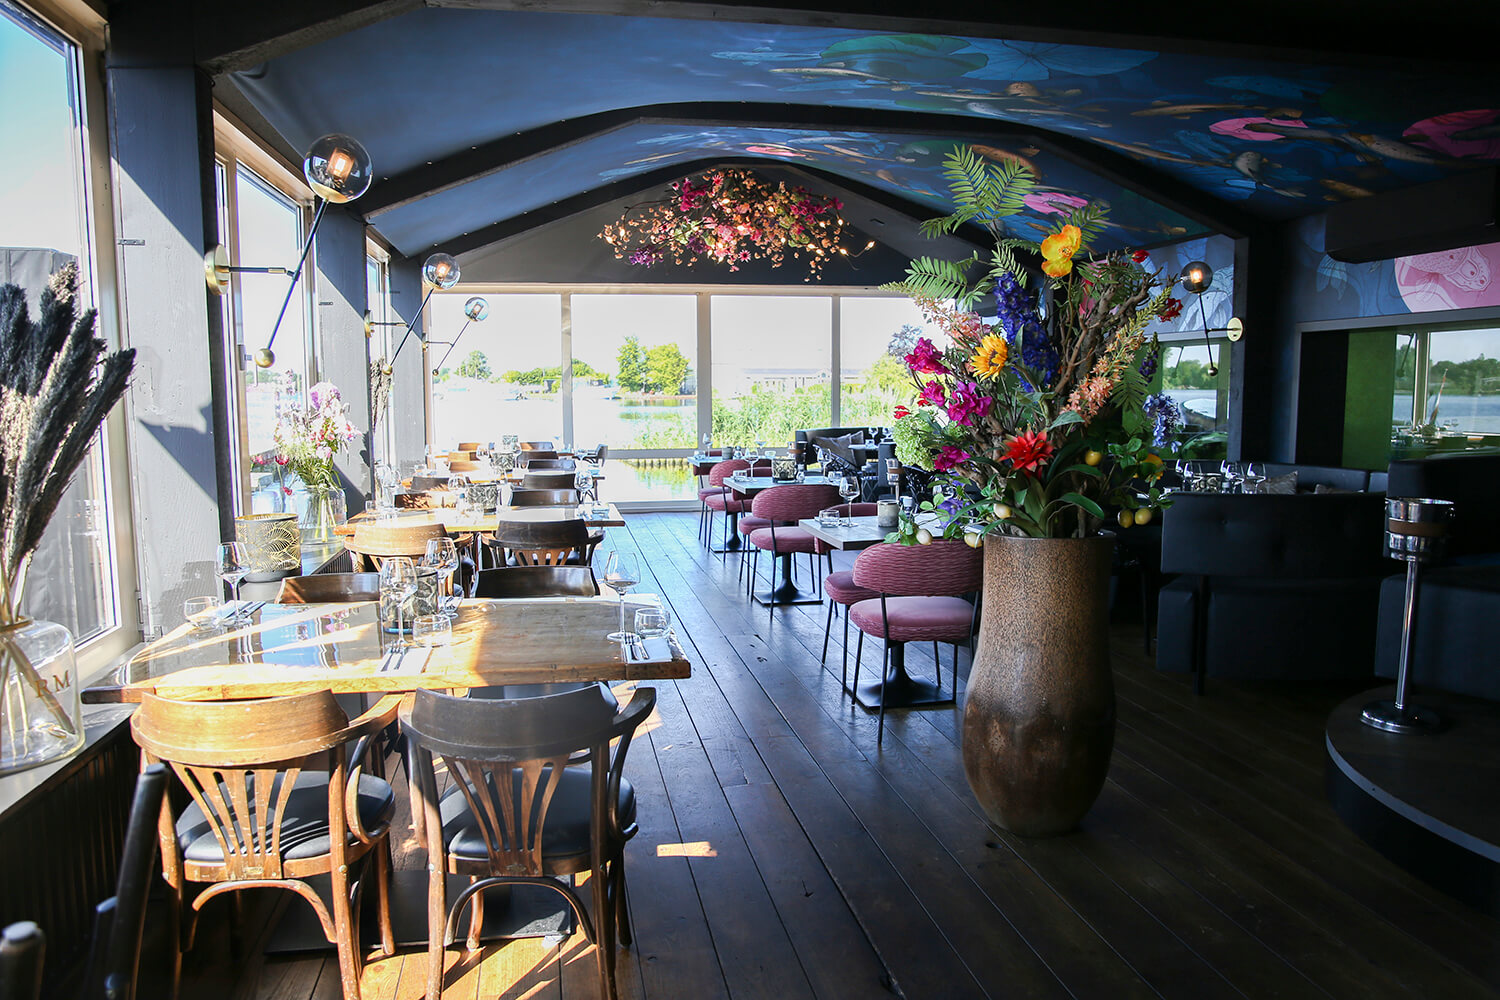 Brasserie de Haven- Restaurants in Aalsmeer die geopend zijn op maandag